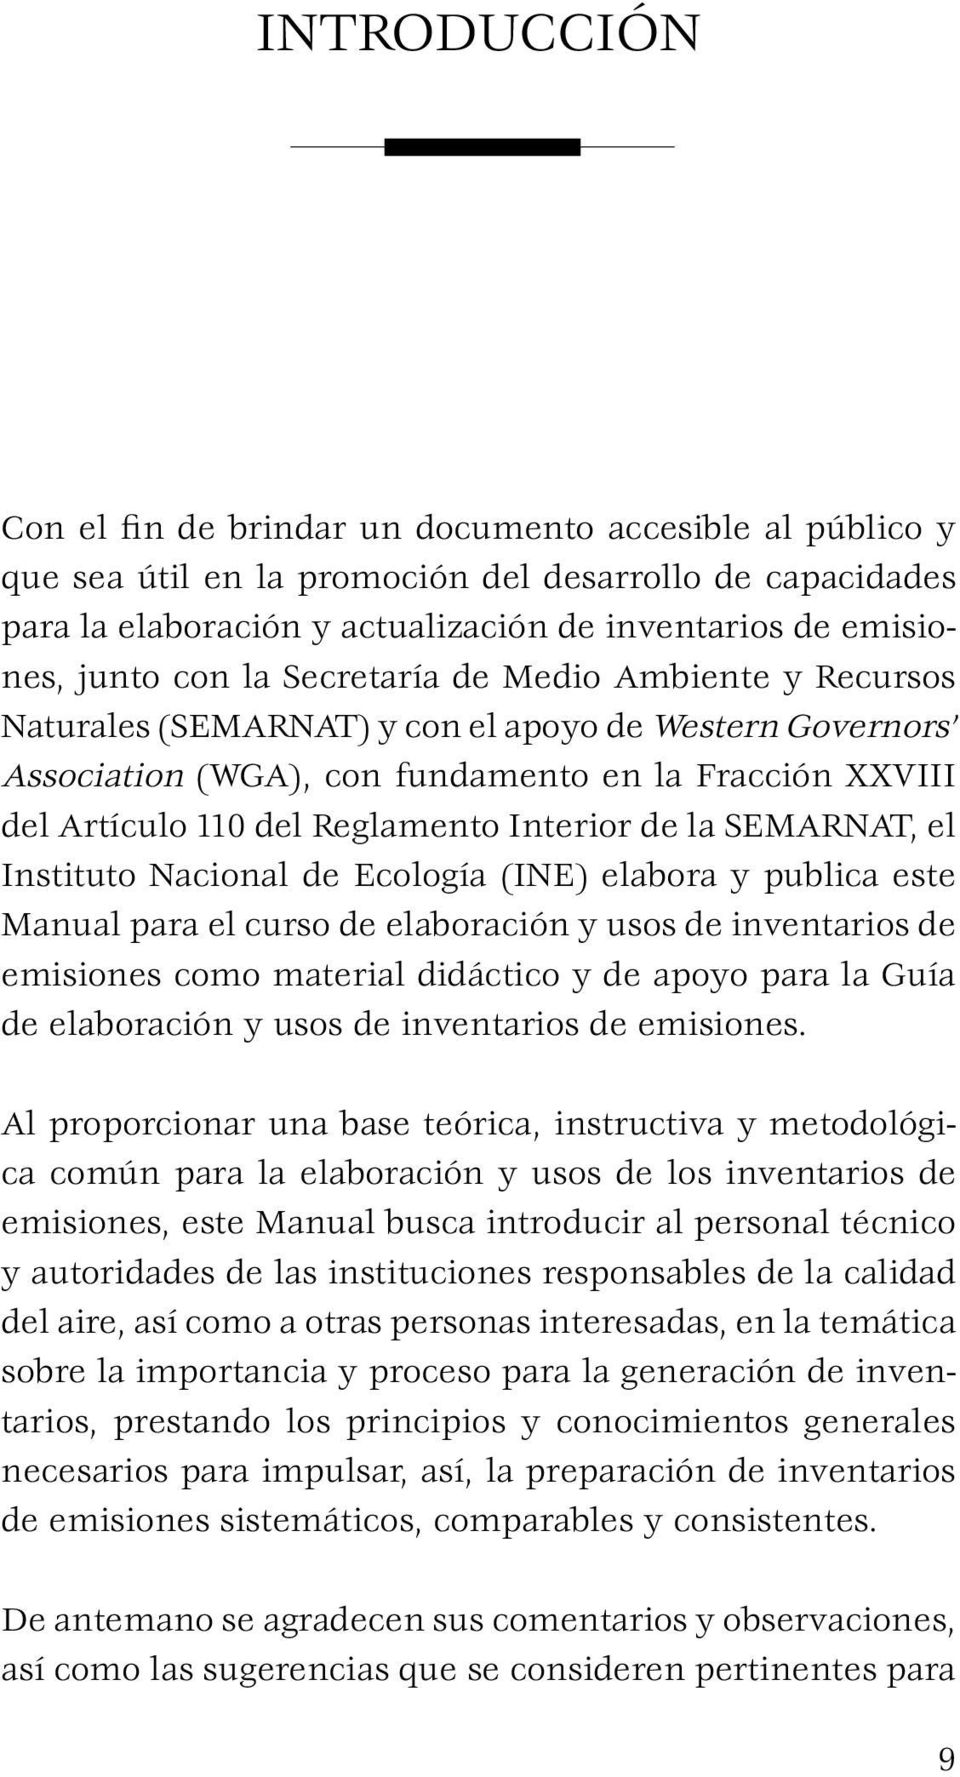 Interior de la SEMARNAT, el Instituto Nacional de Ecología (INE) elabora y publica este Manual para el curso de elaboración y usos de inventarios de emisiones como material didáctico y de apoyo para